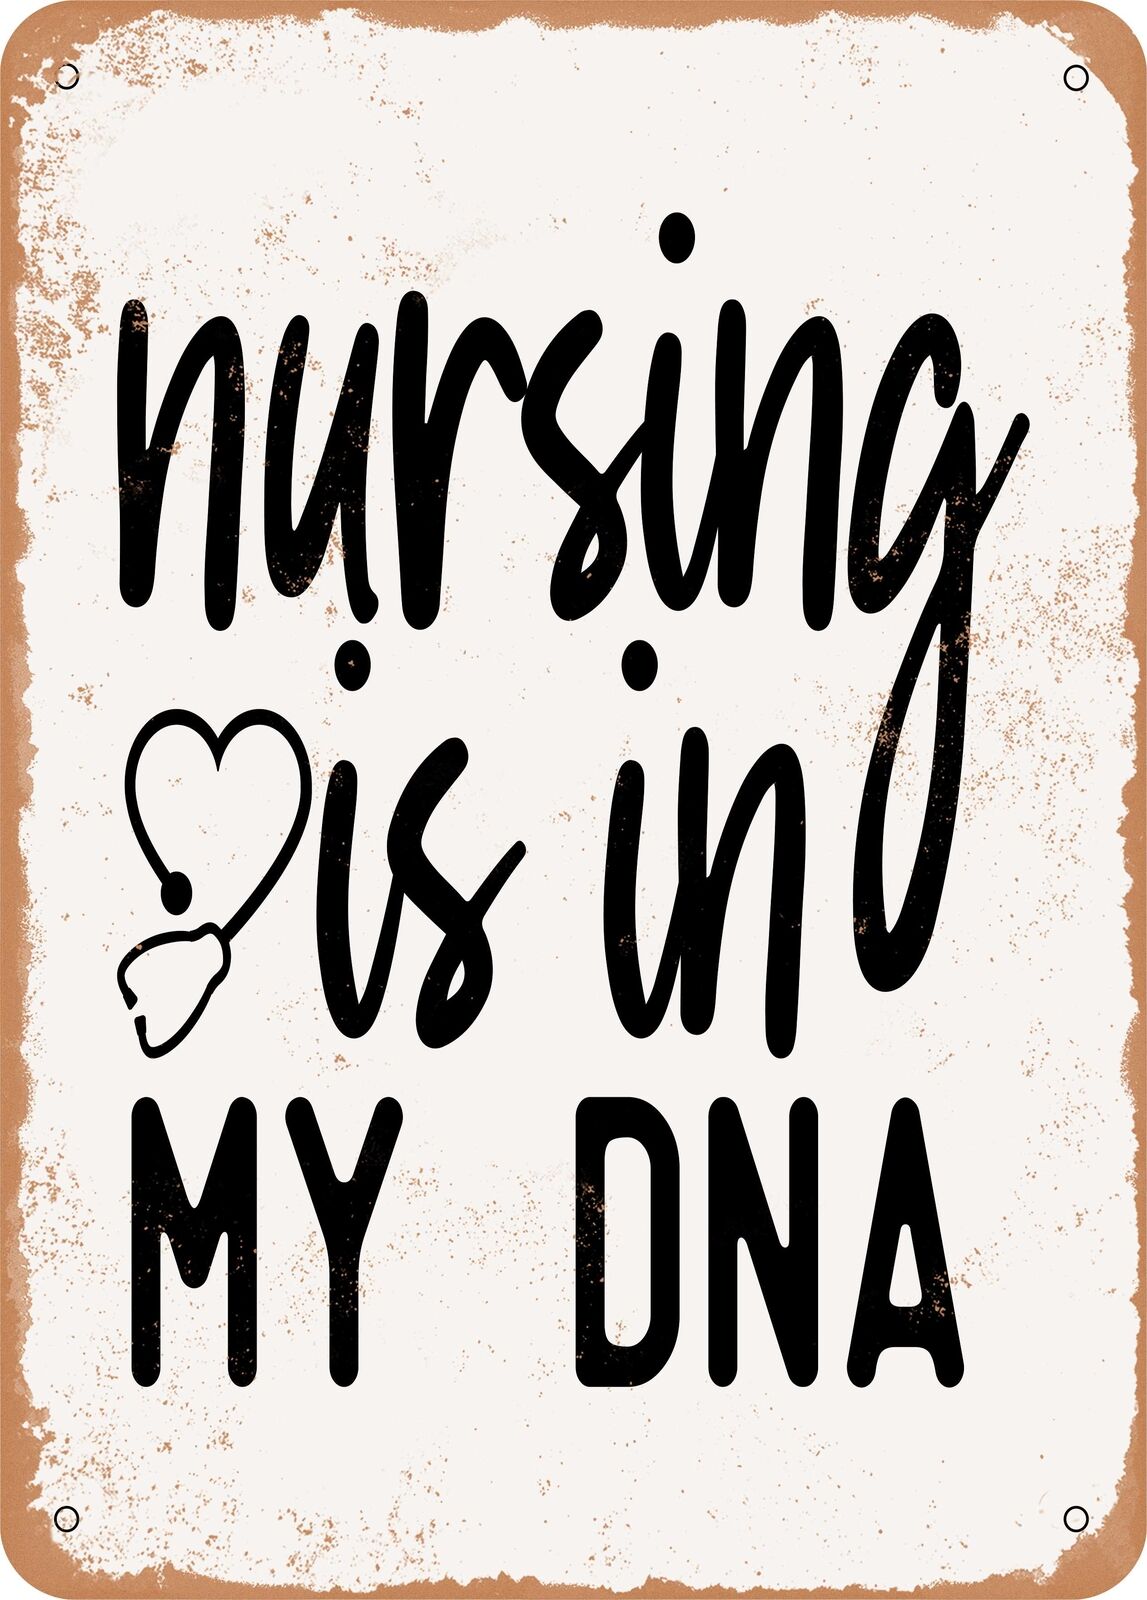 Metal Sign - Nursing is In My DNA - 2 - Vintage Rusty Look